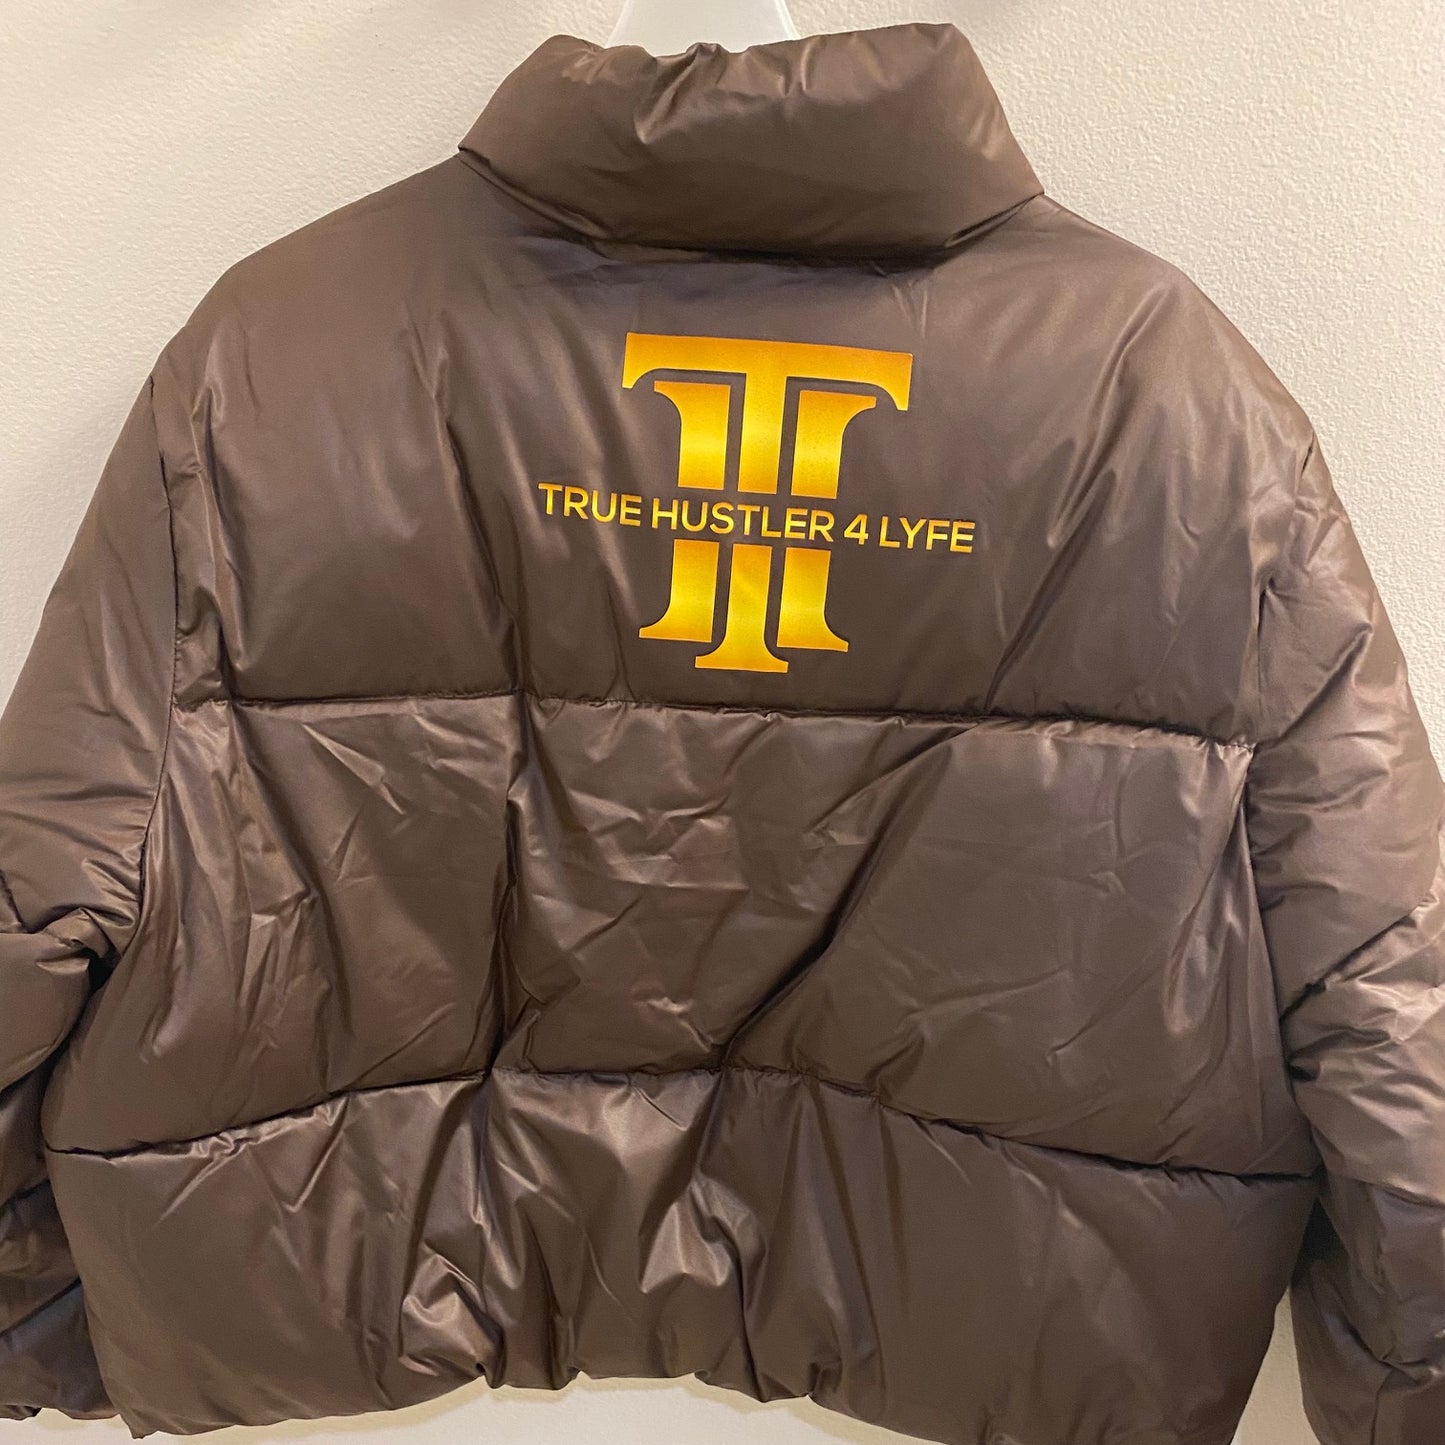 "True Hustler 4 Lyfe: Elite Cropped Puffer Jacket for Women"-Cocoa Mocha